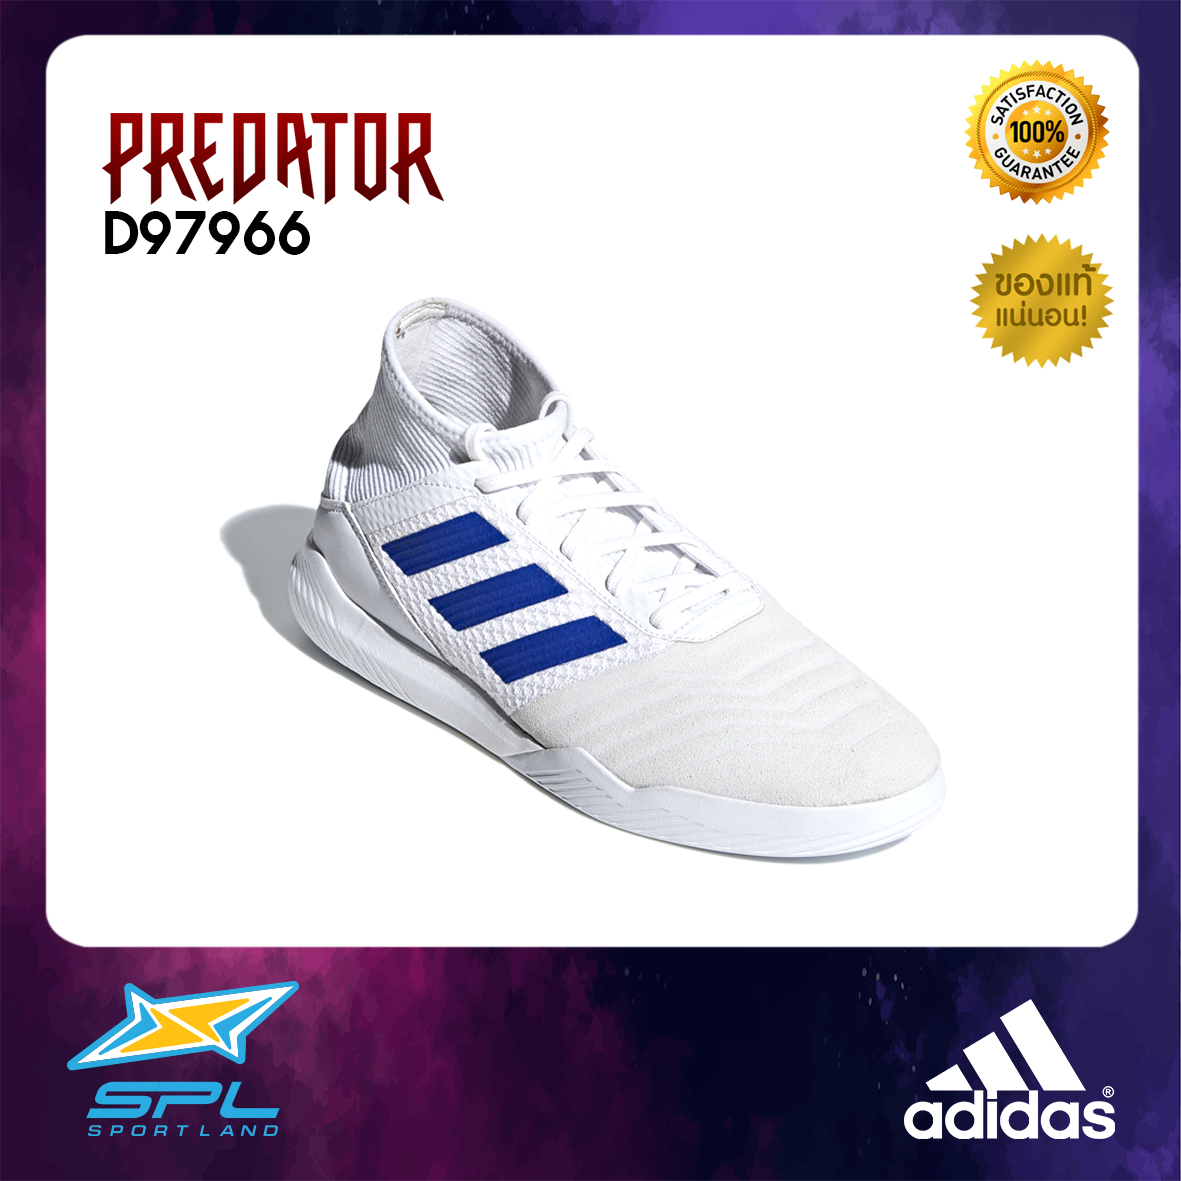 Adidas รองเท้าเทรนนิ่ง รองเท้ากีฬา รองเท้าผู้ชาย อดิดาส Training Men Shoe Predator 19.3 D97966 (3200)